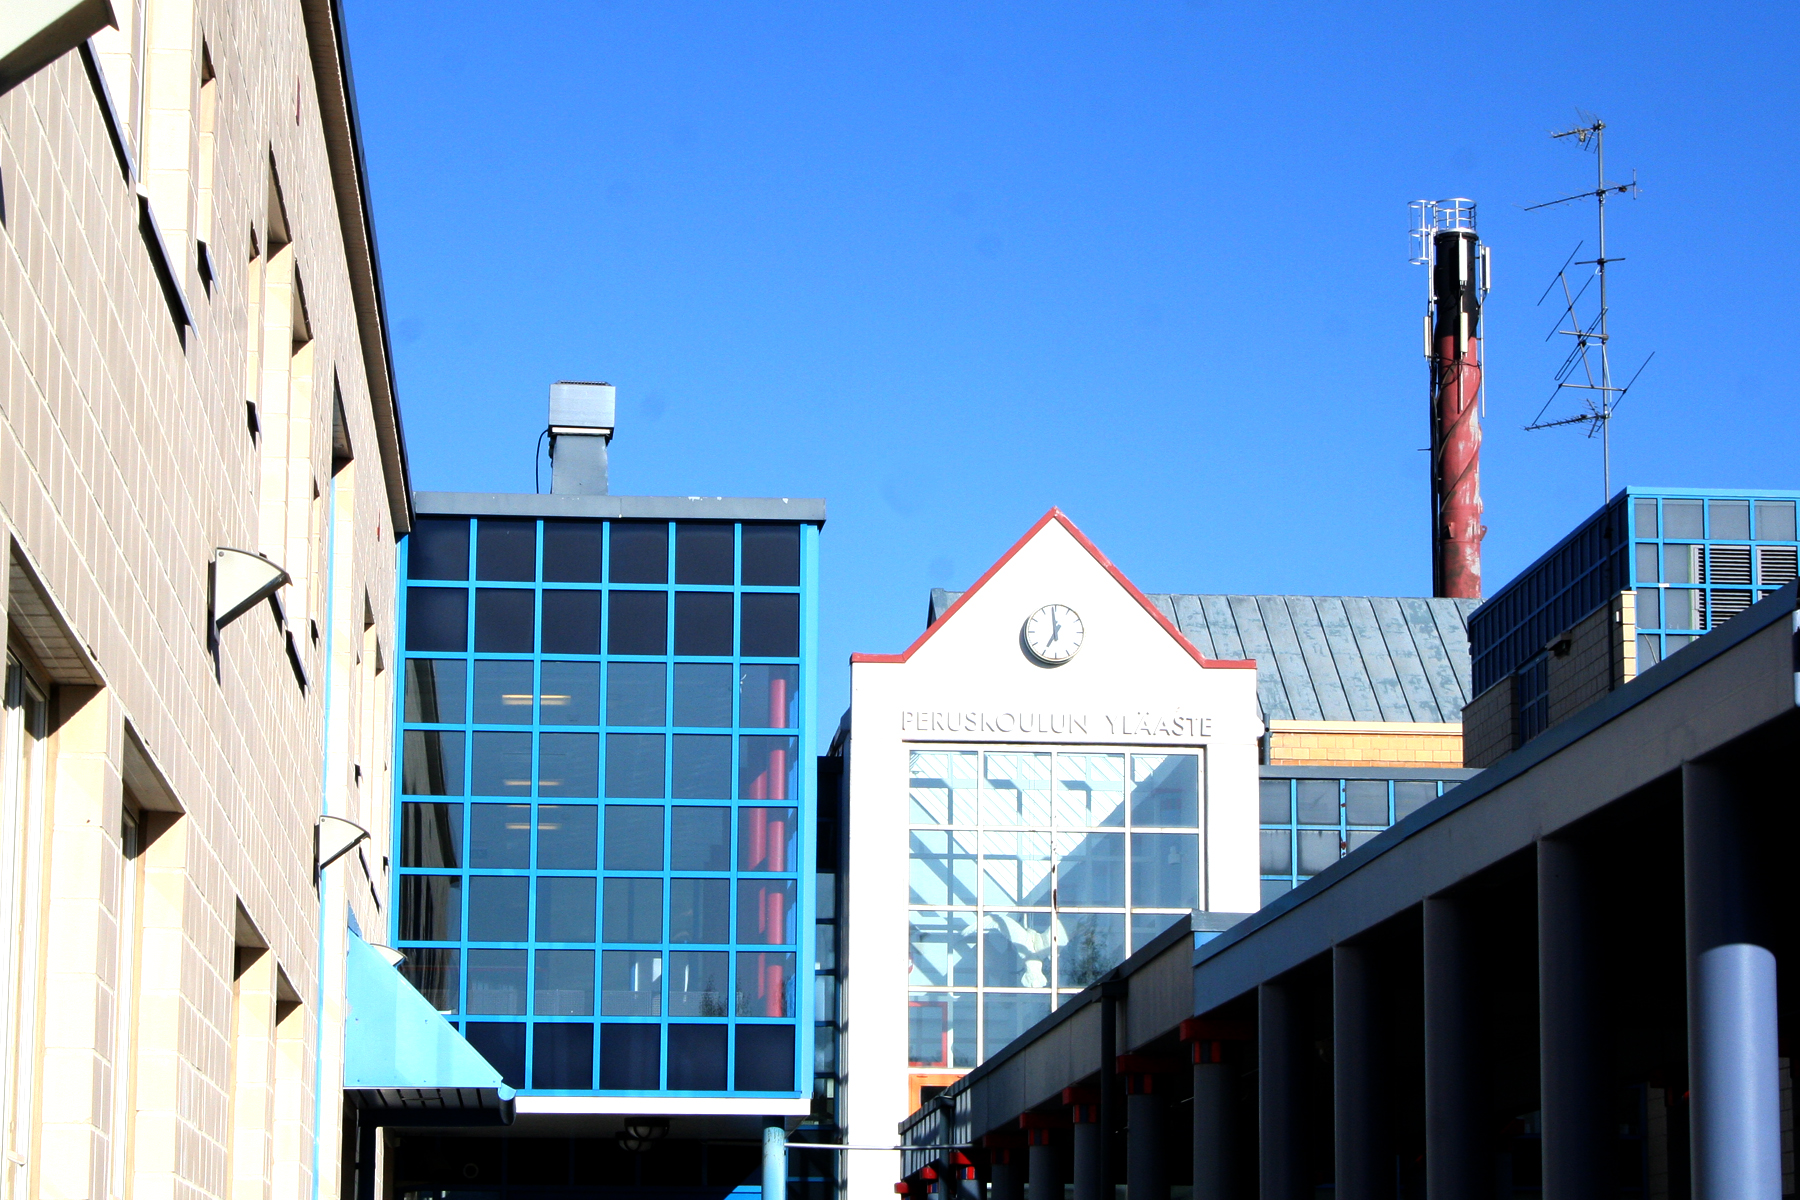 Kuvassa Nisulanmäen koulurakennuksen julkisivua ja taustalla näkyy korkea piippu.